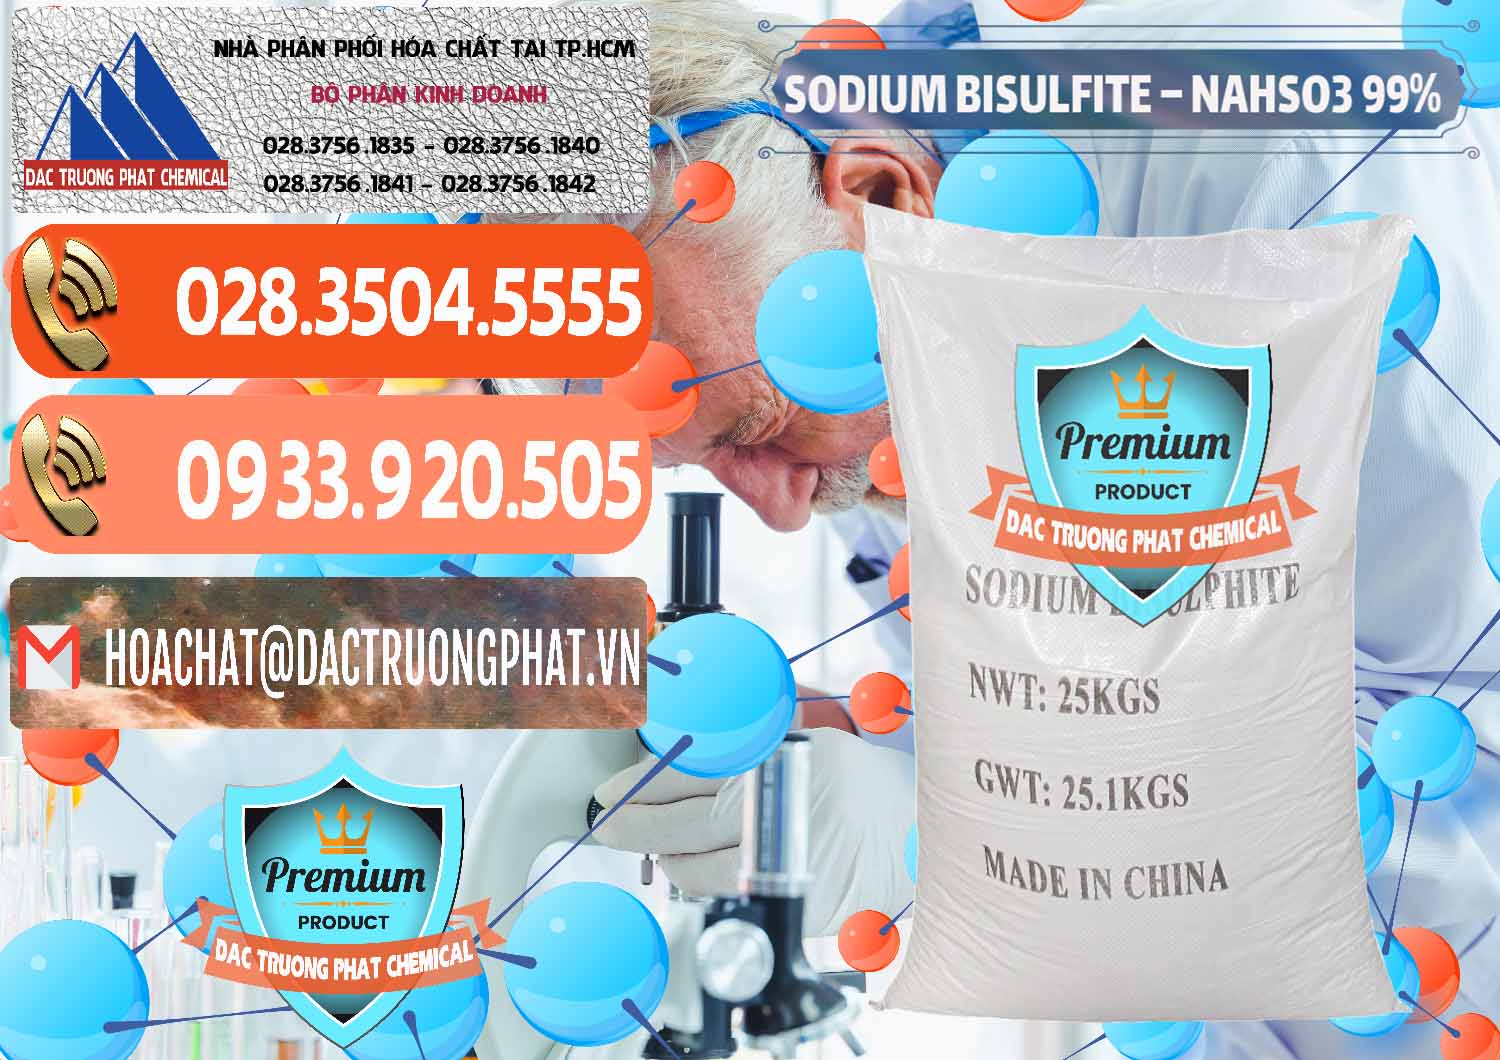 Công ty cung ứng và bán Sodium Bisulfite – NAHSO3 Trung Quốc China - 0140 - Cty chuyên kinh doanh & cung cấp hóa chất tại TP.HCM - hoachatmientay.com